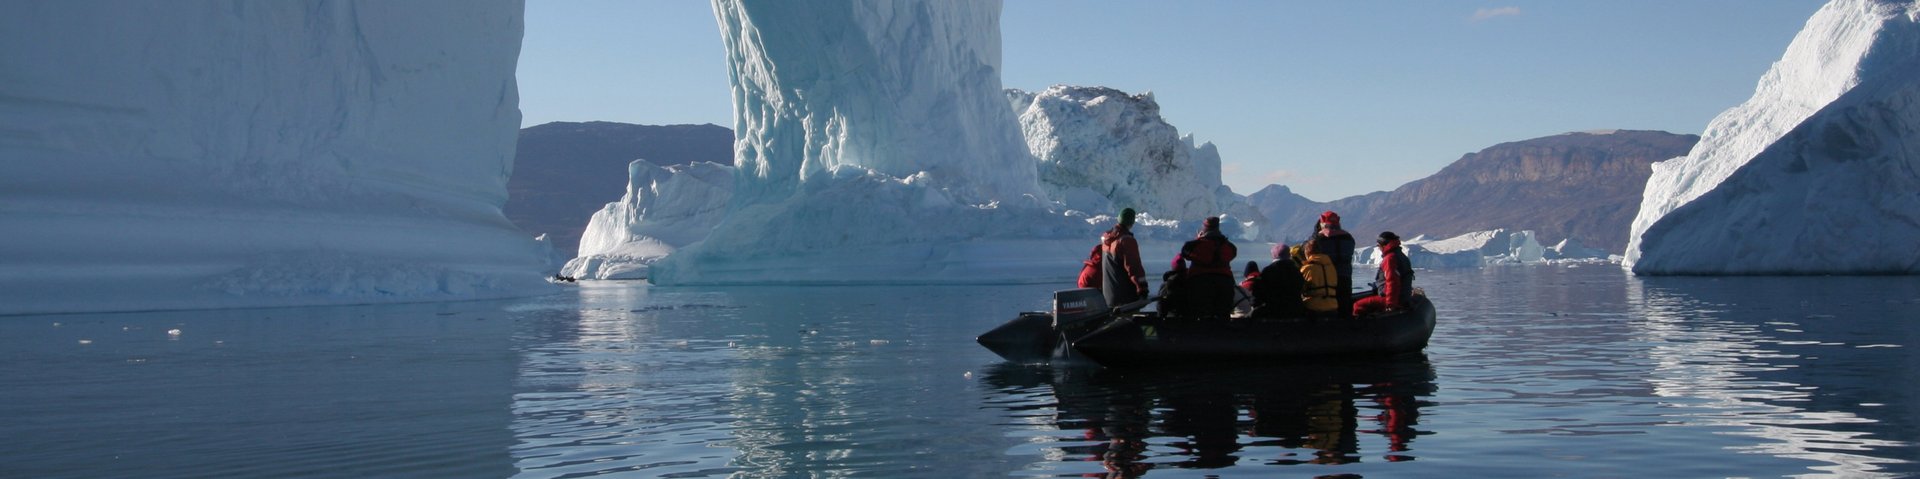 Zodiacfahrt vor einem grossen Eisberg